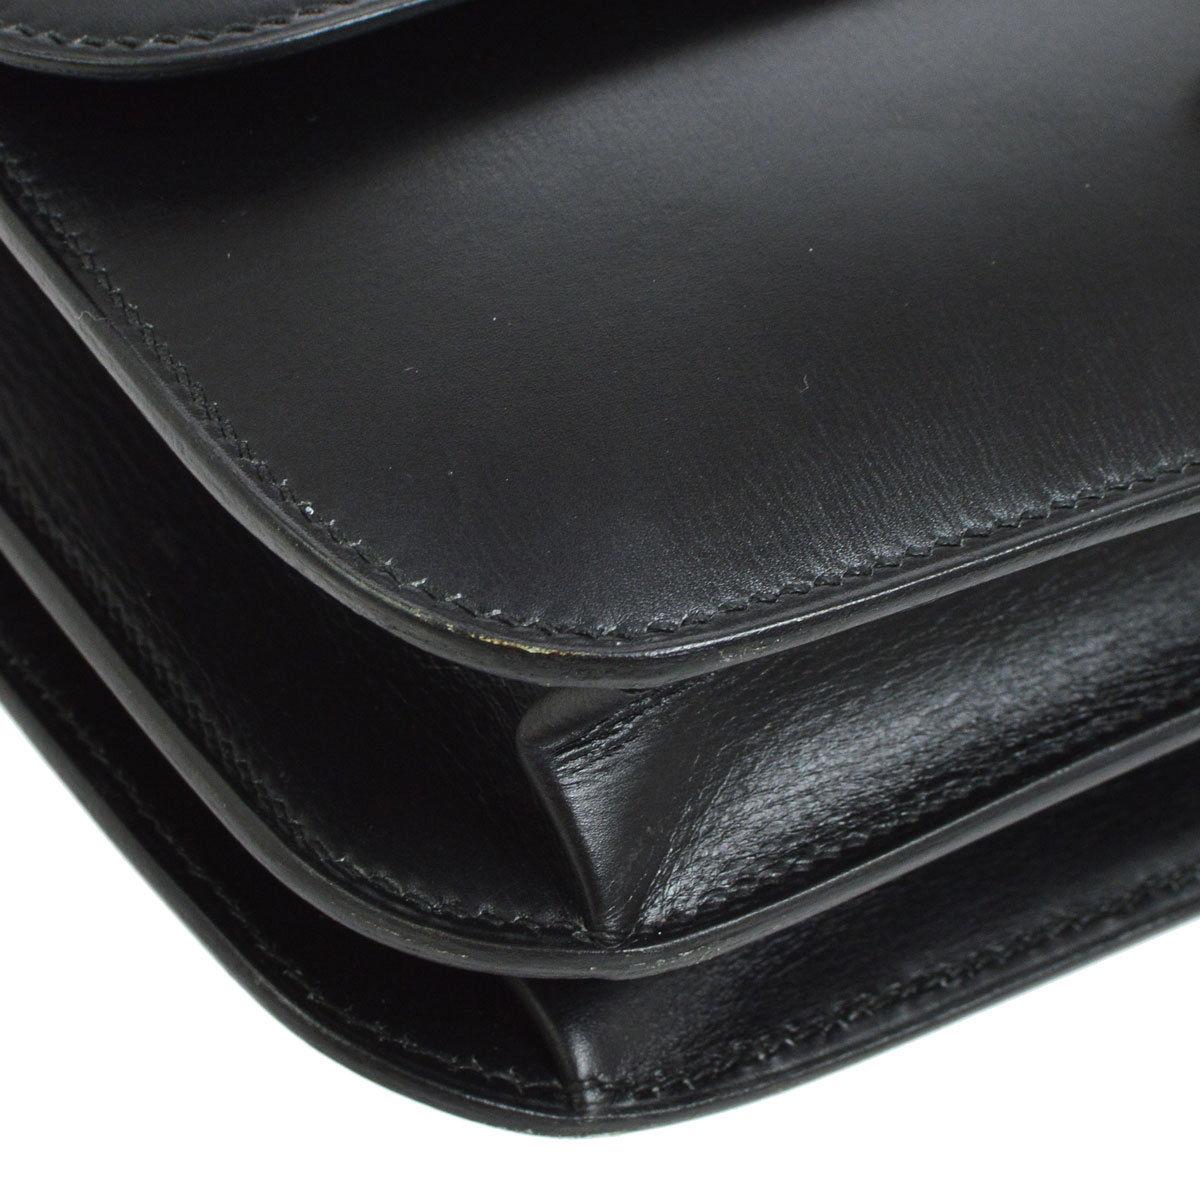 Hermes Black Leather Gold Emblem Evening Top Handle Satchel Kelly Style Bag 1